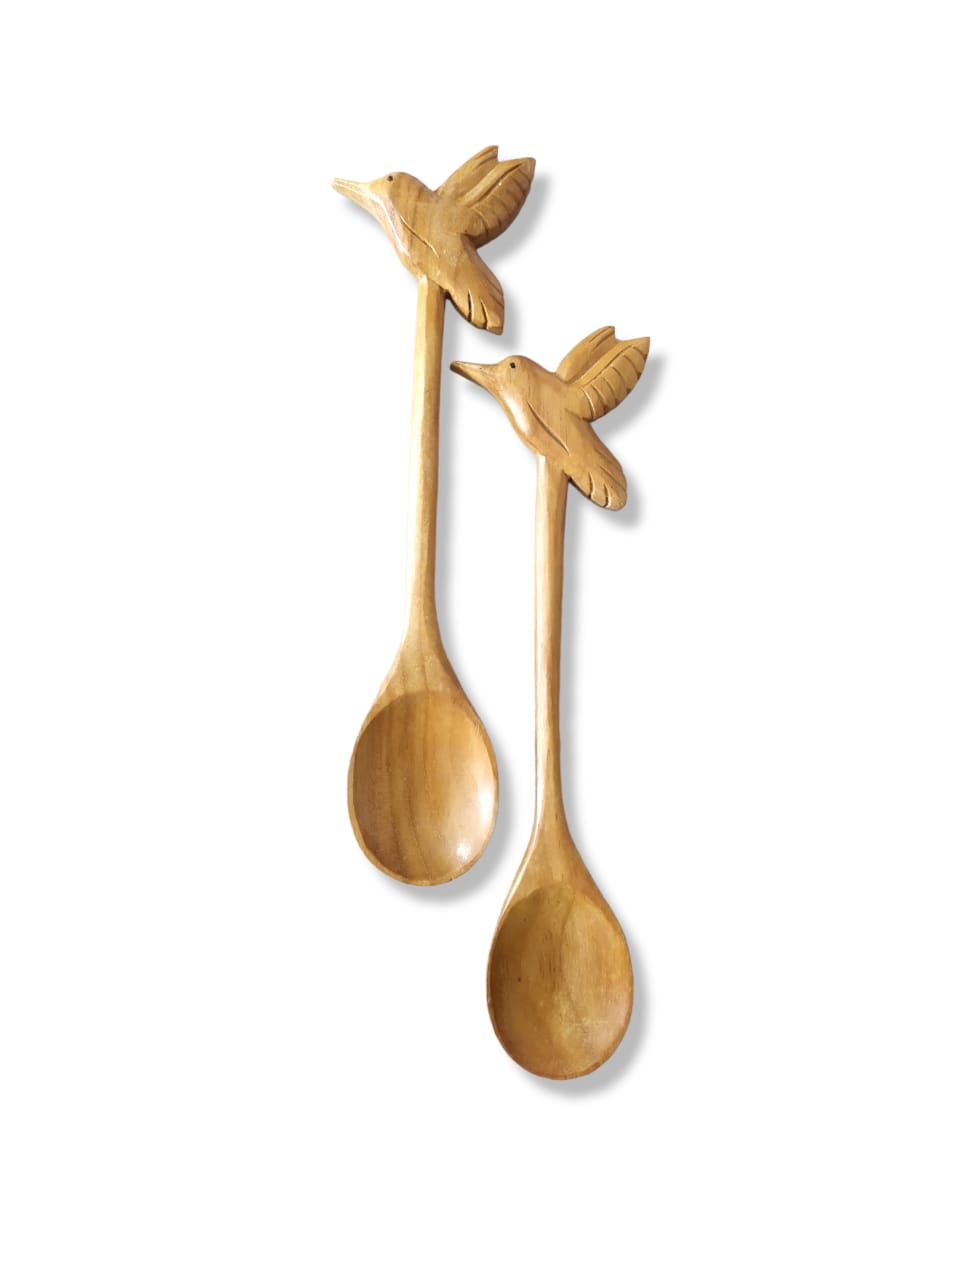 Wooden Spoon Bird Handle